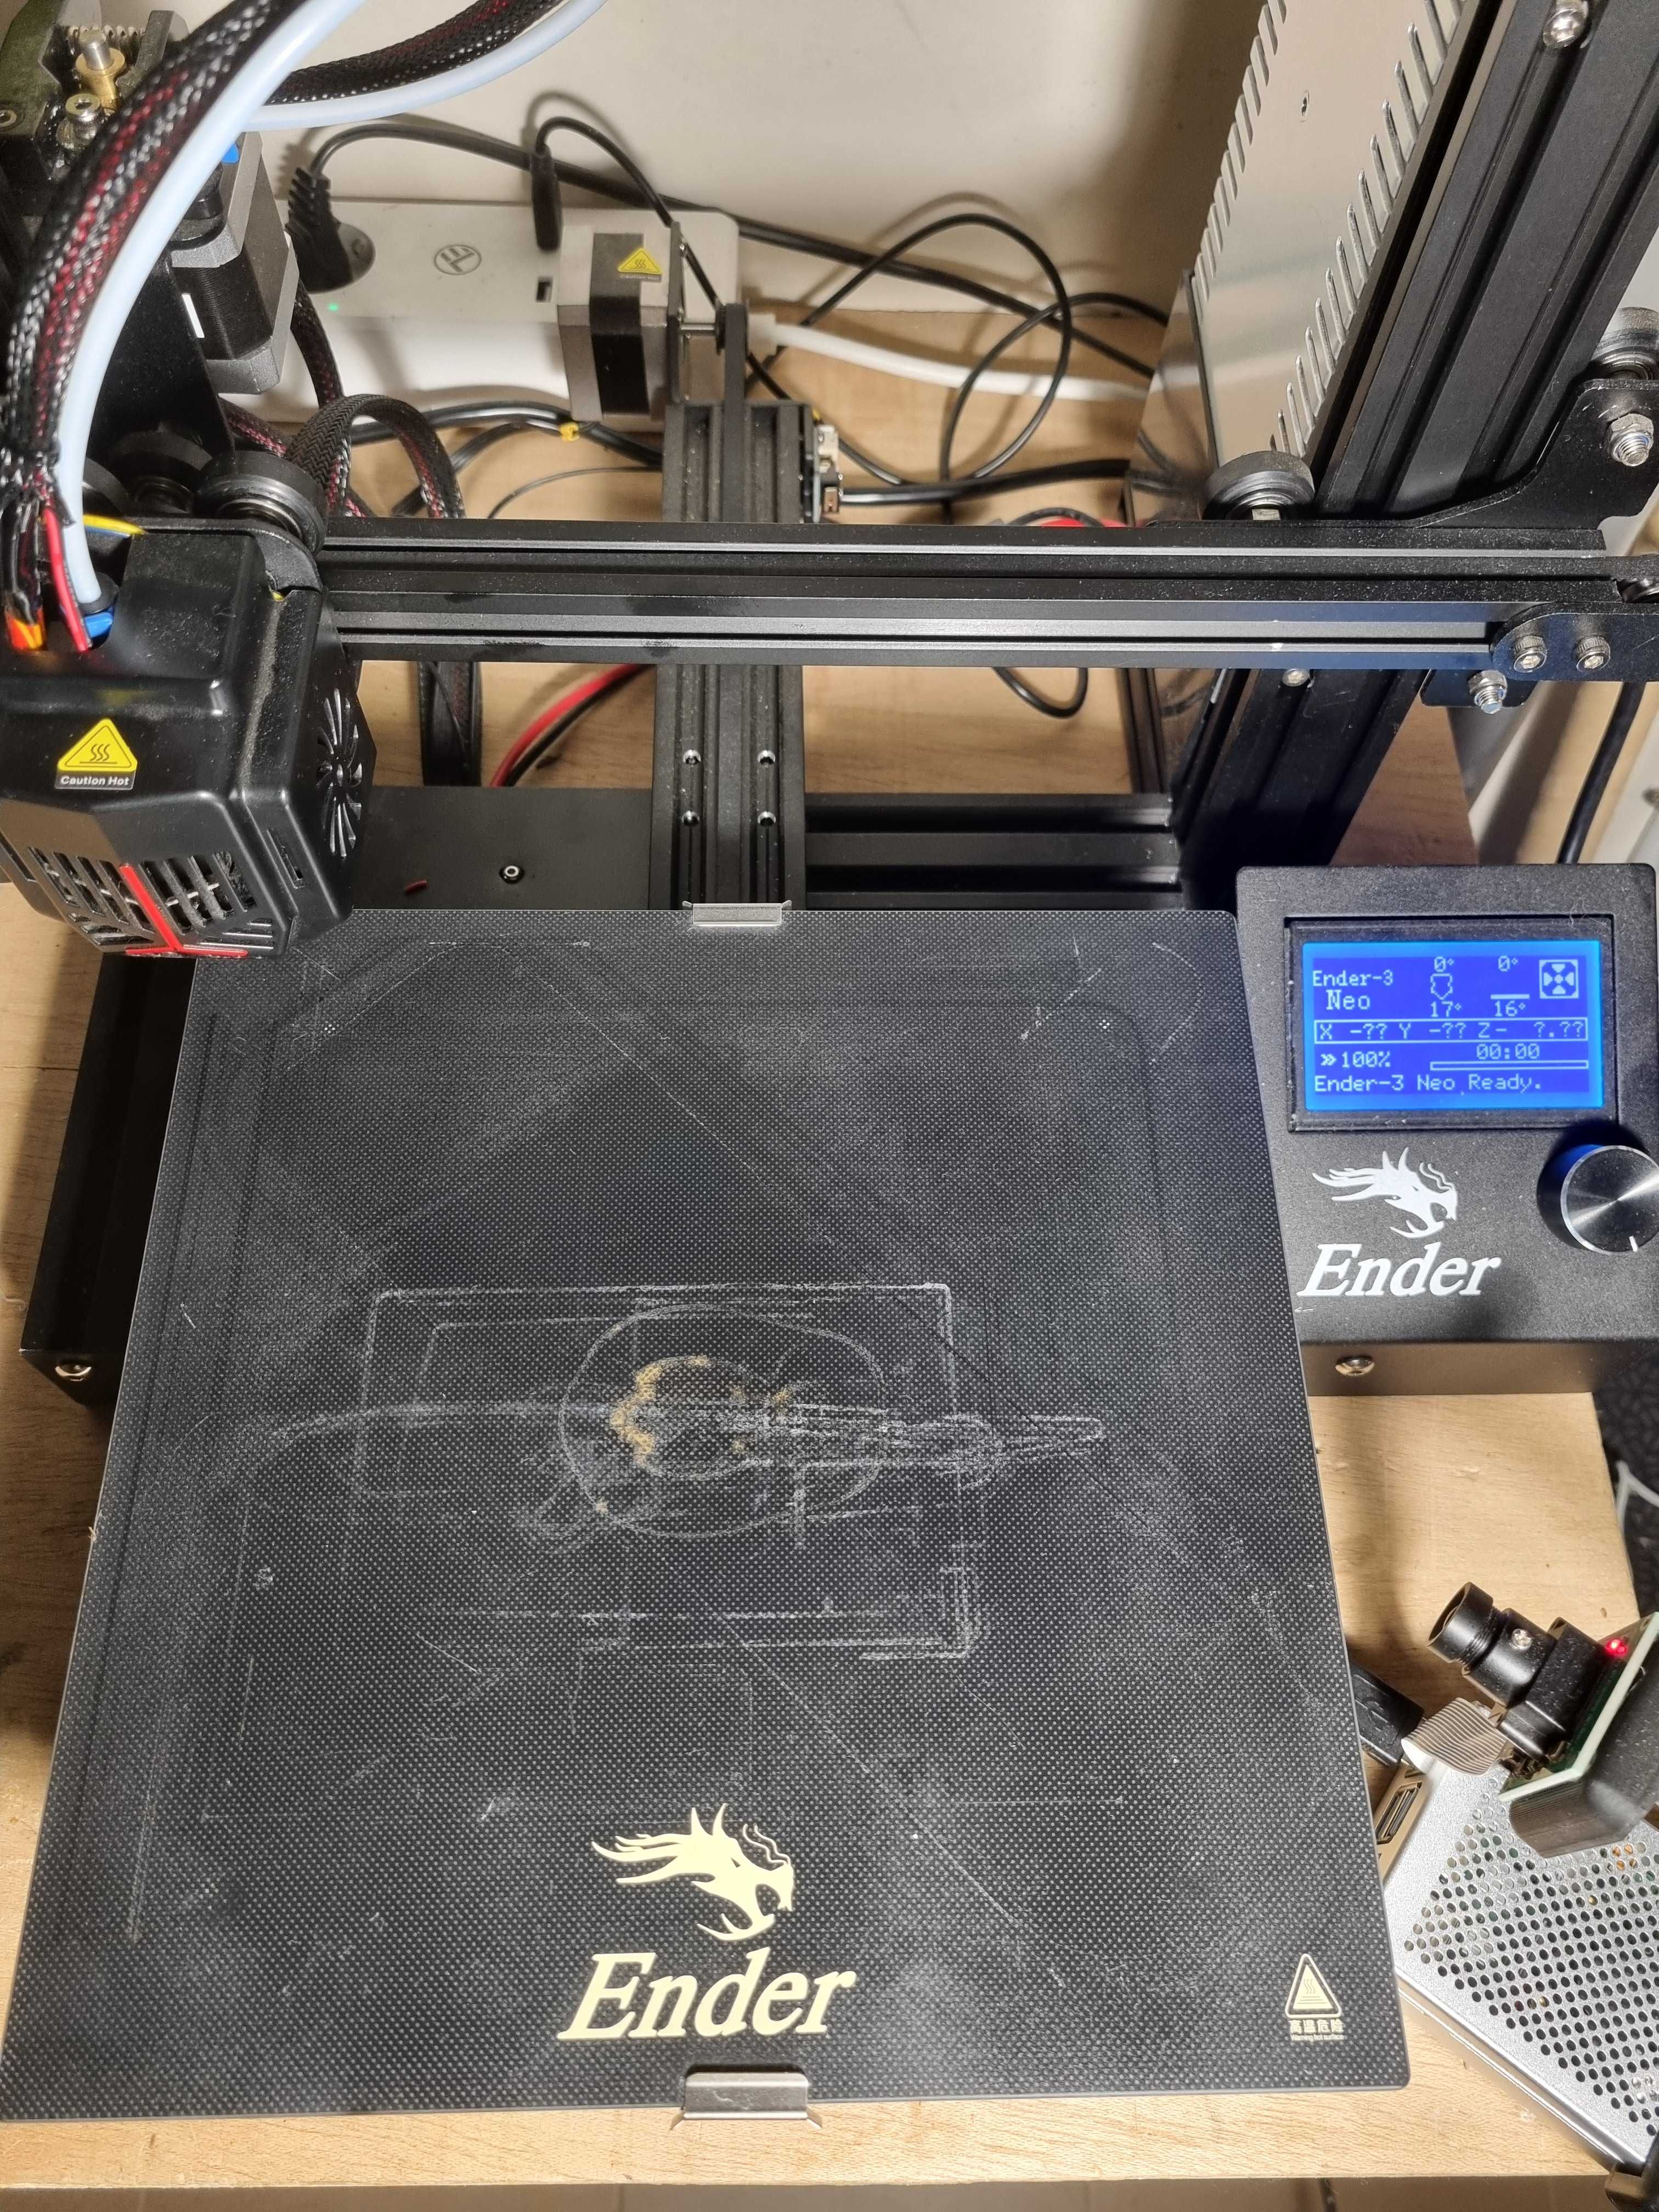 Imprimanta 3D Ender 3 Neo